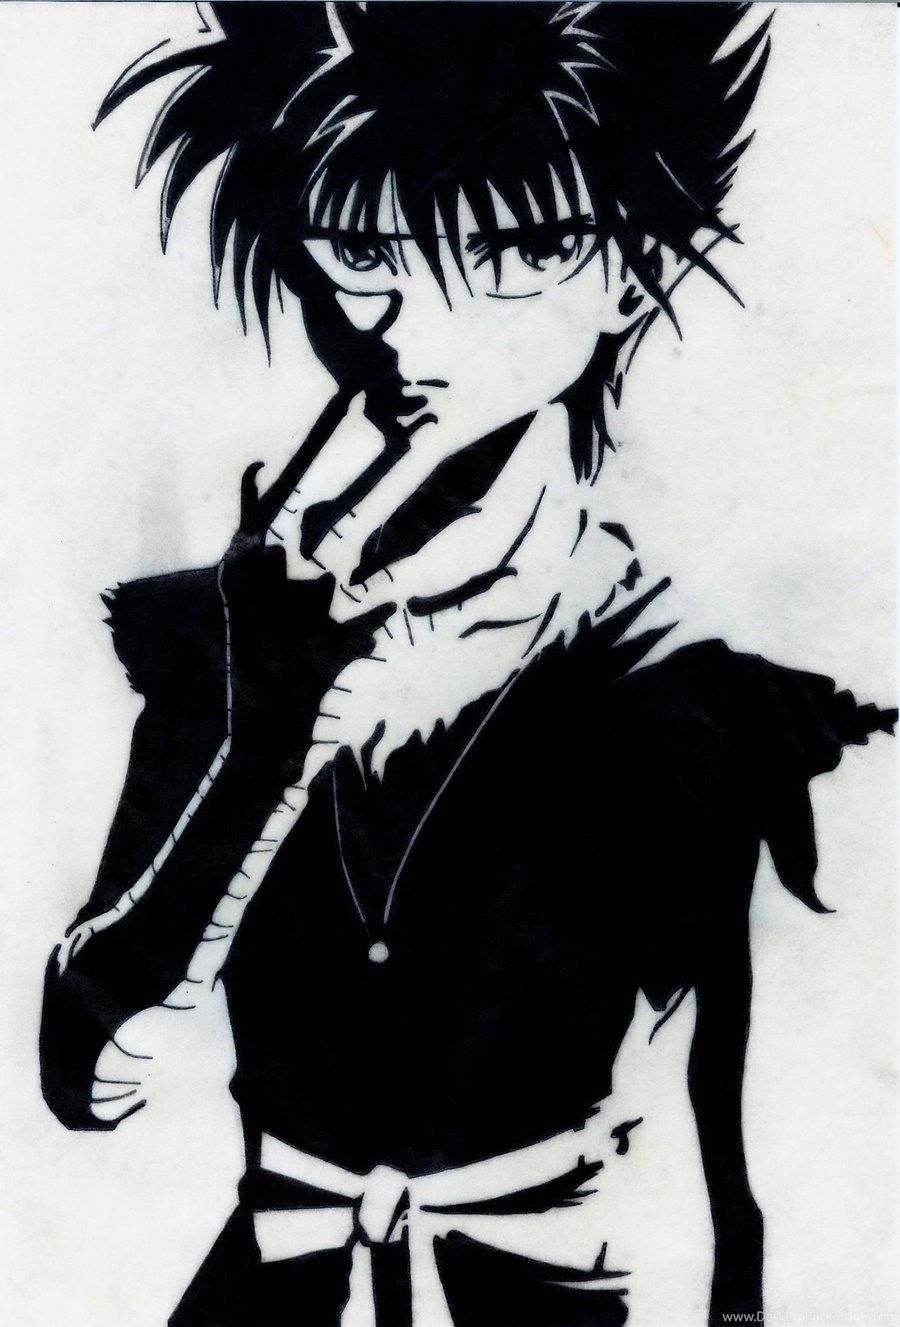 hiei with his black dragon  Manga anime Anime character design Anime  characters